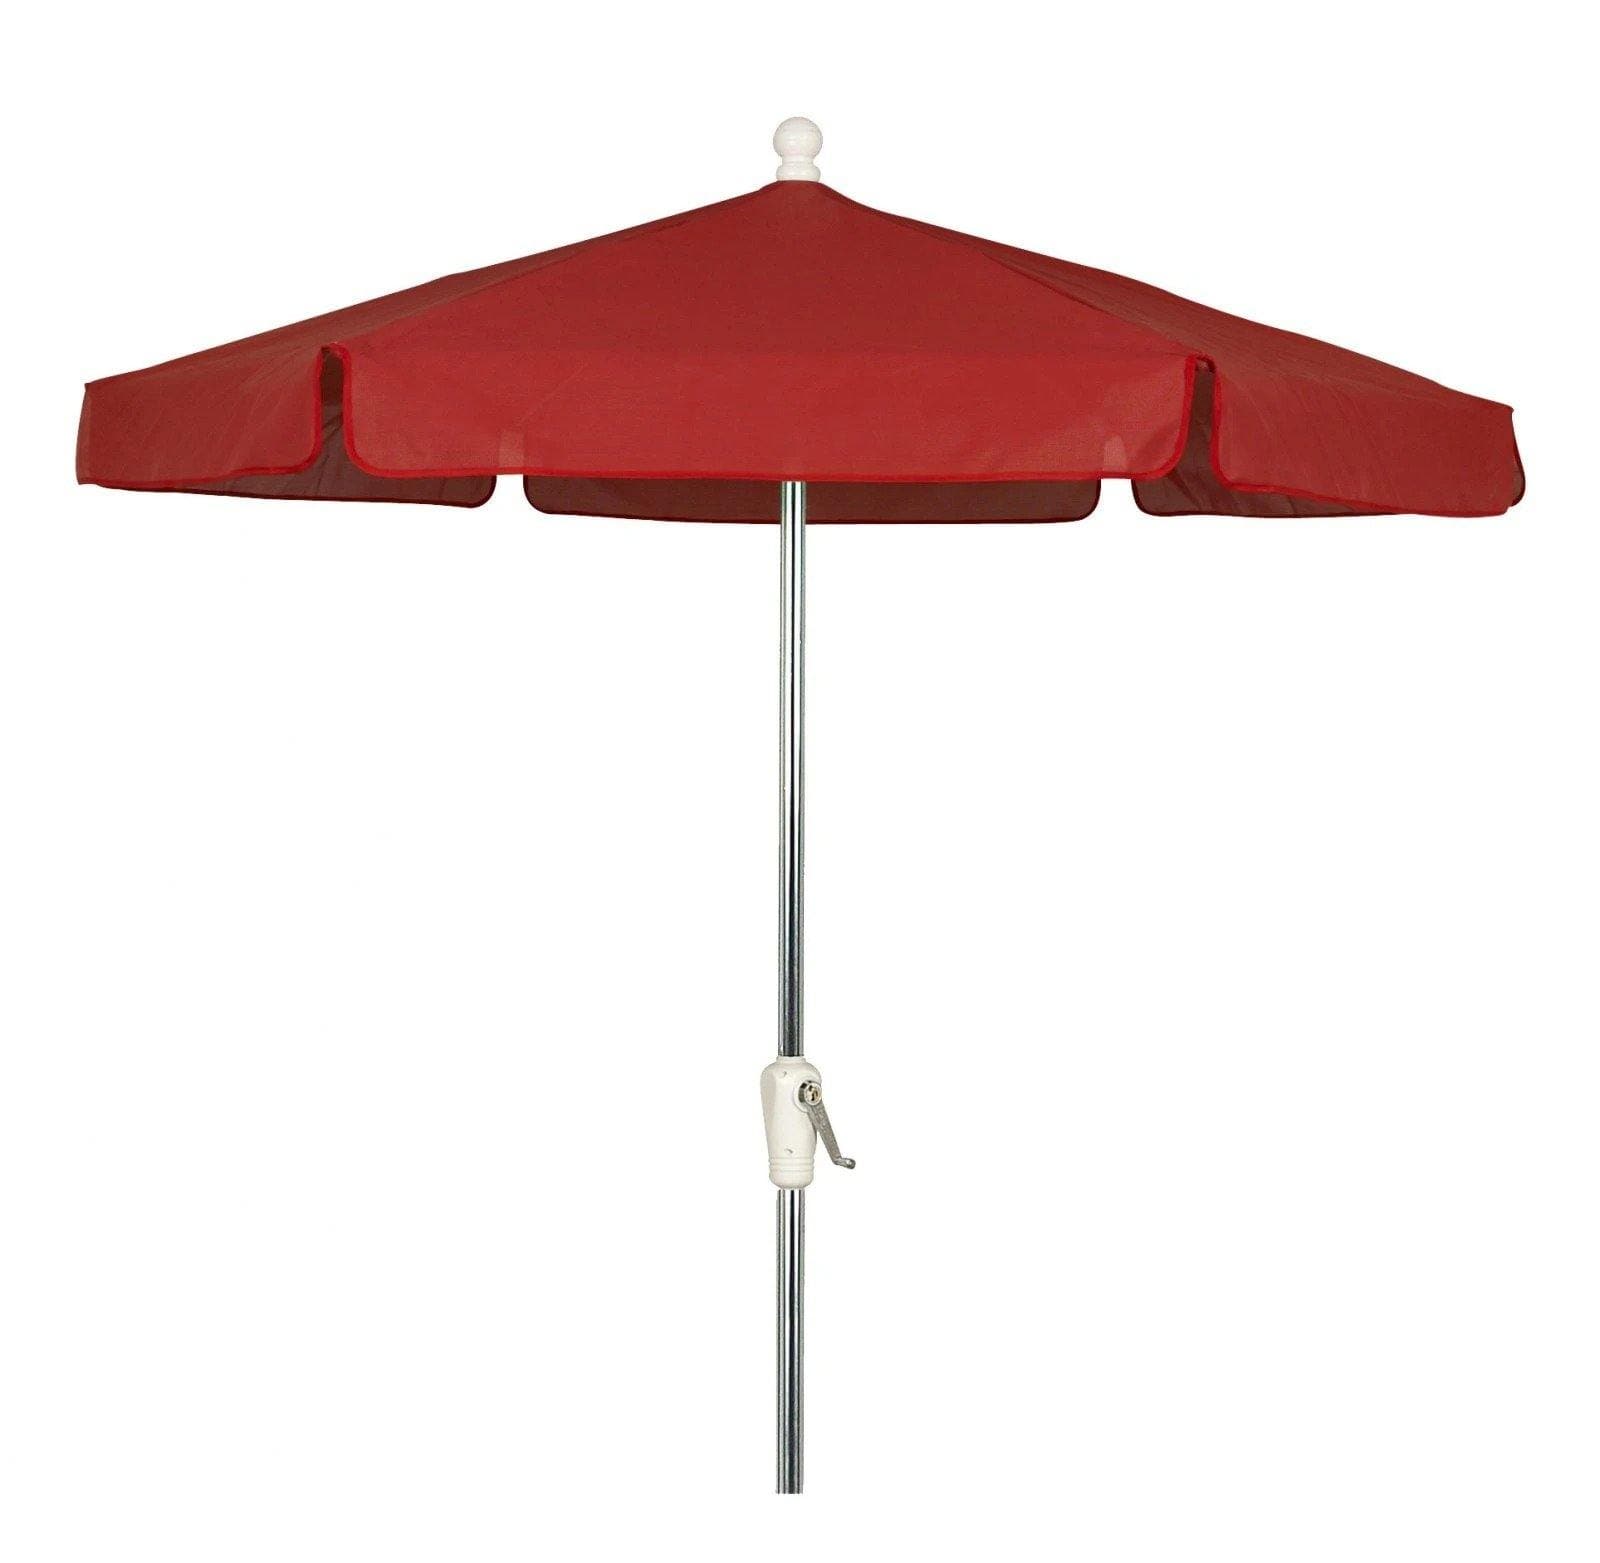 Fiberbuilt Table Umbrellas Red Fiberbuilt 7.5' Garden Umbrella w/ Crank Lift and Tilt